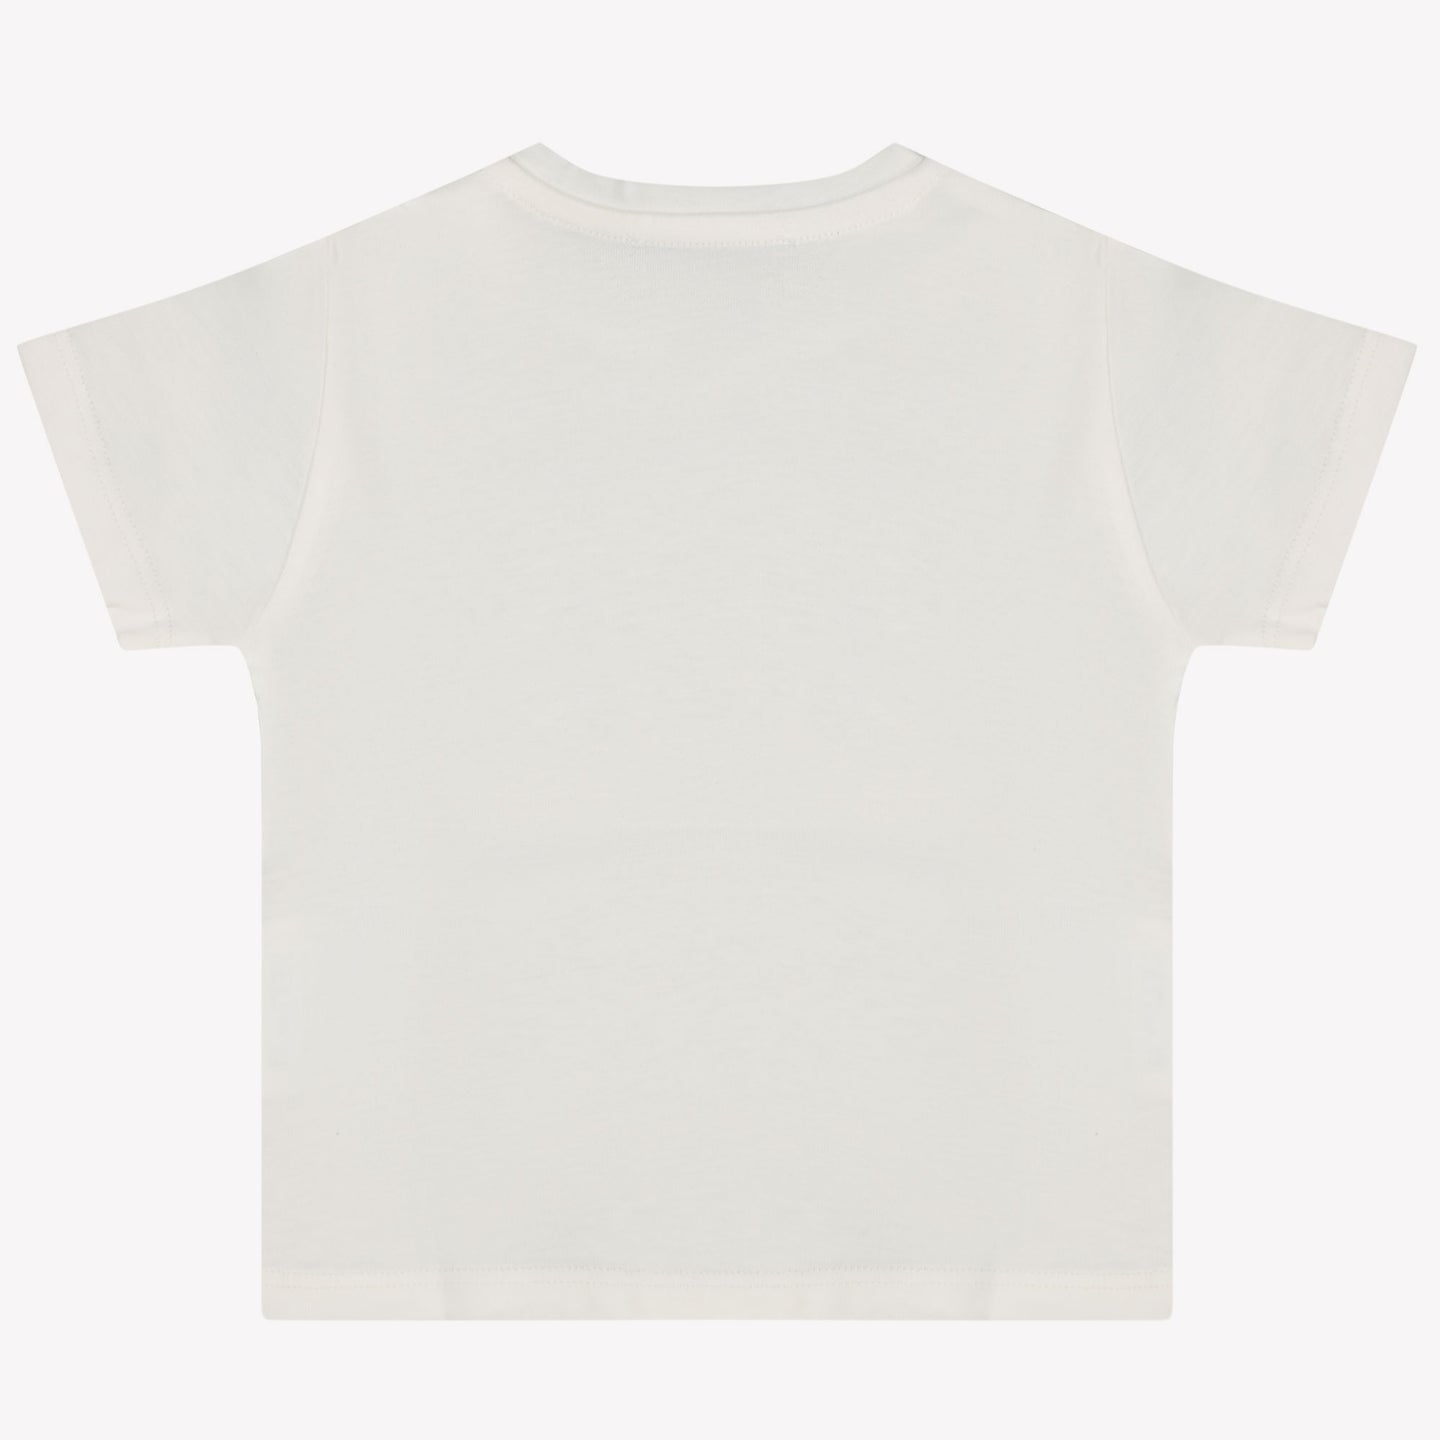 Versace Baby Unisex T-shirt White